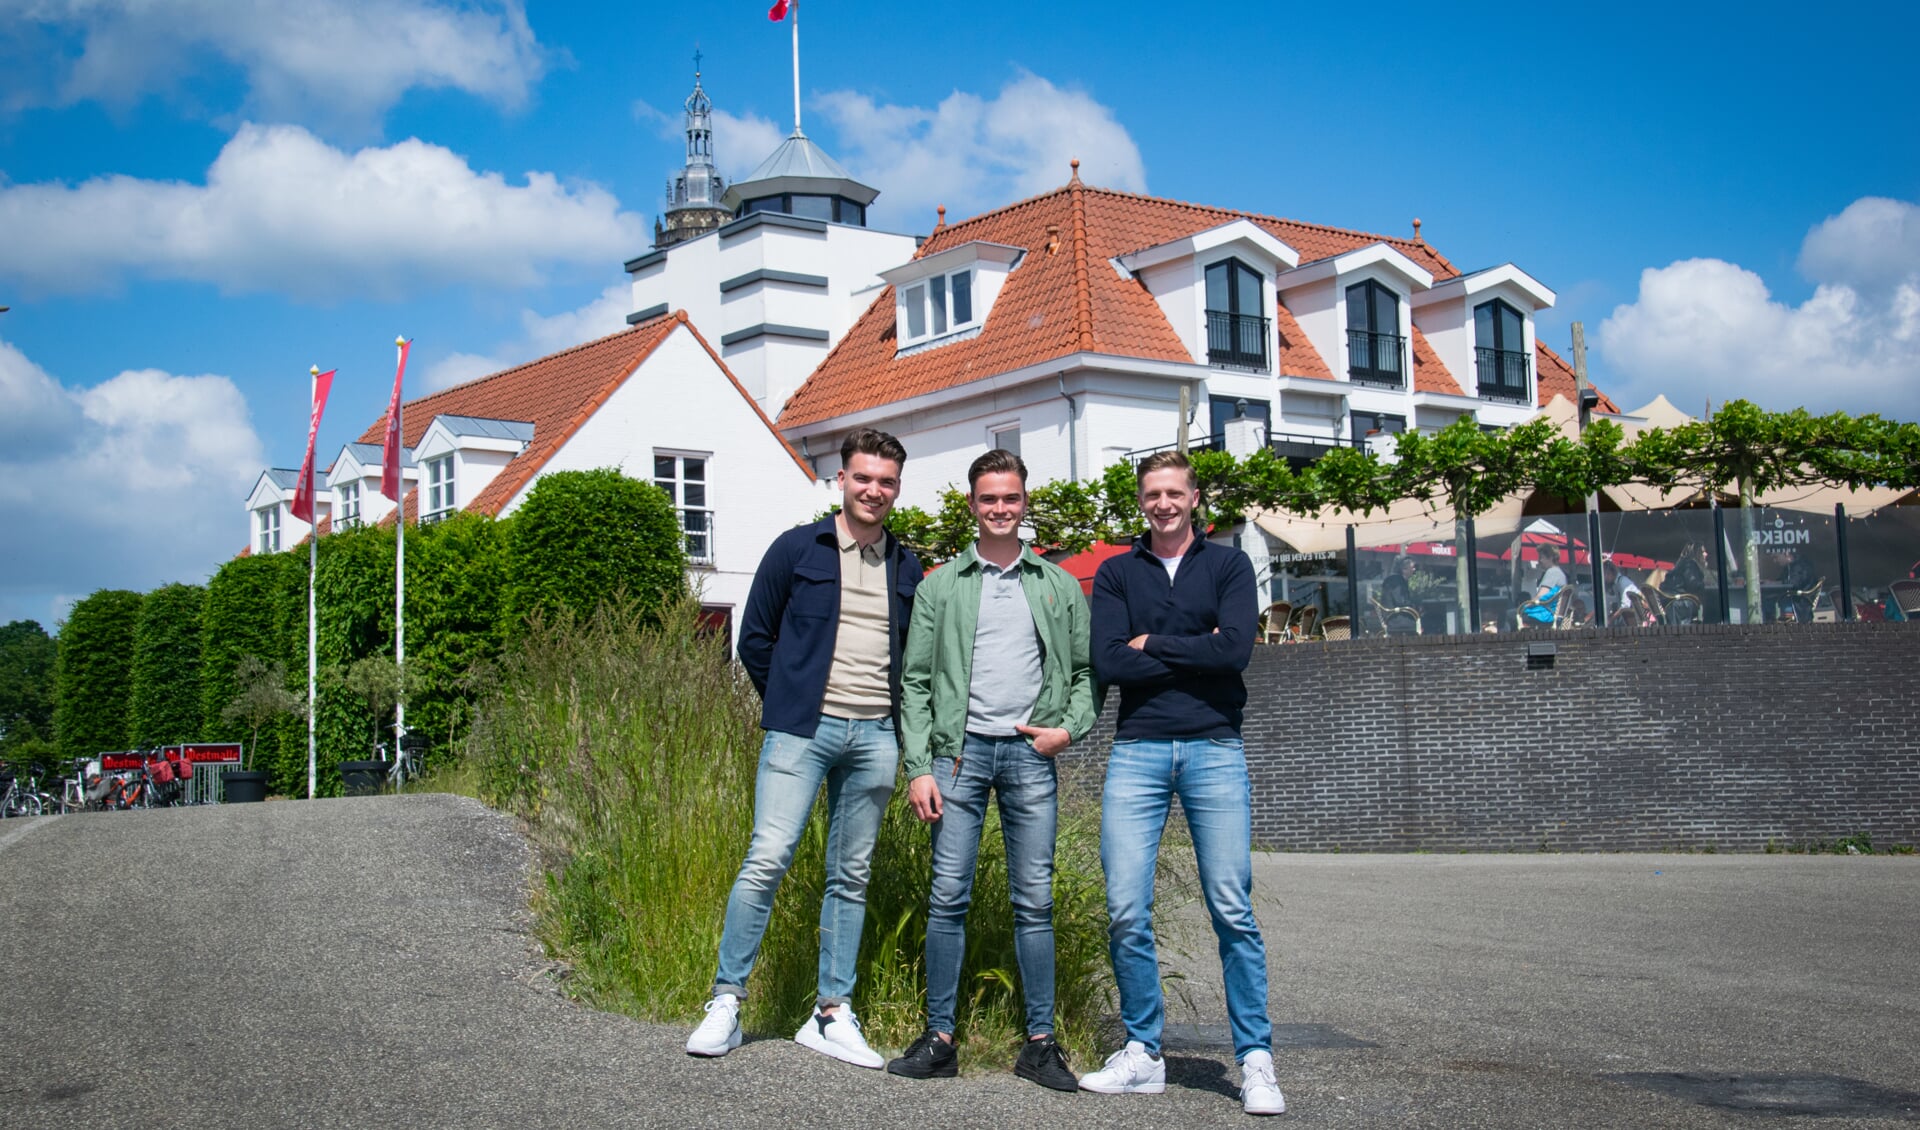 Gerco, John en Gerhard organiseren samenkomsten voor christelijke jongeren bij restaurant Moeke in Rhenen.